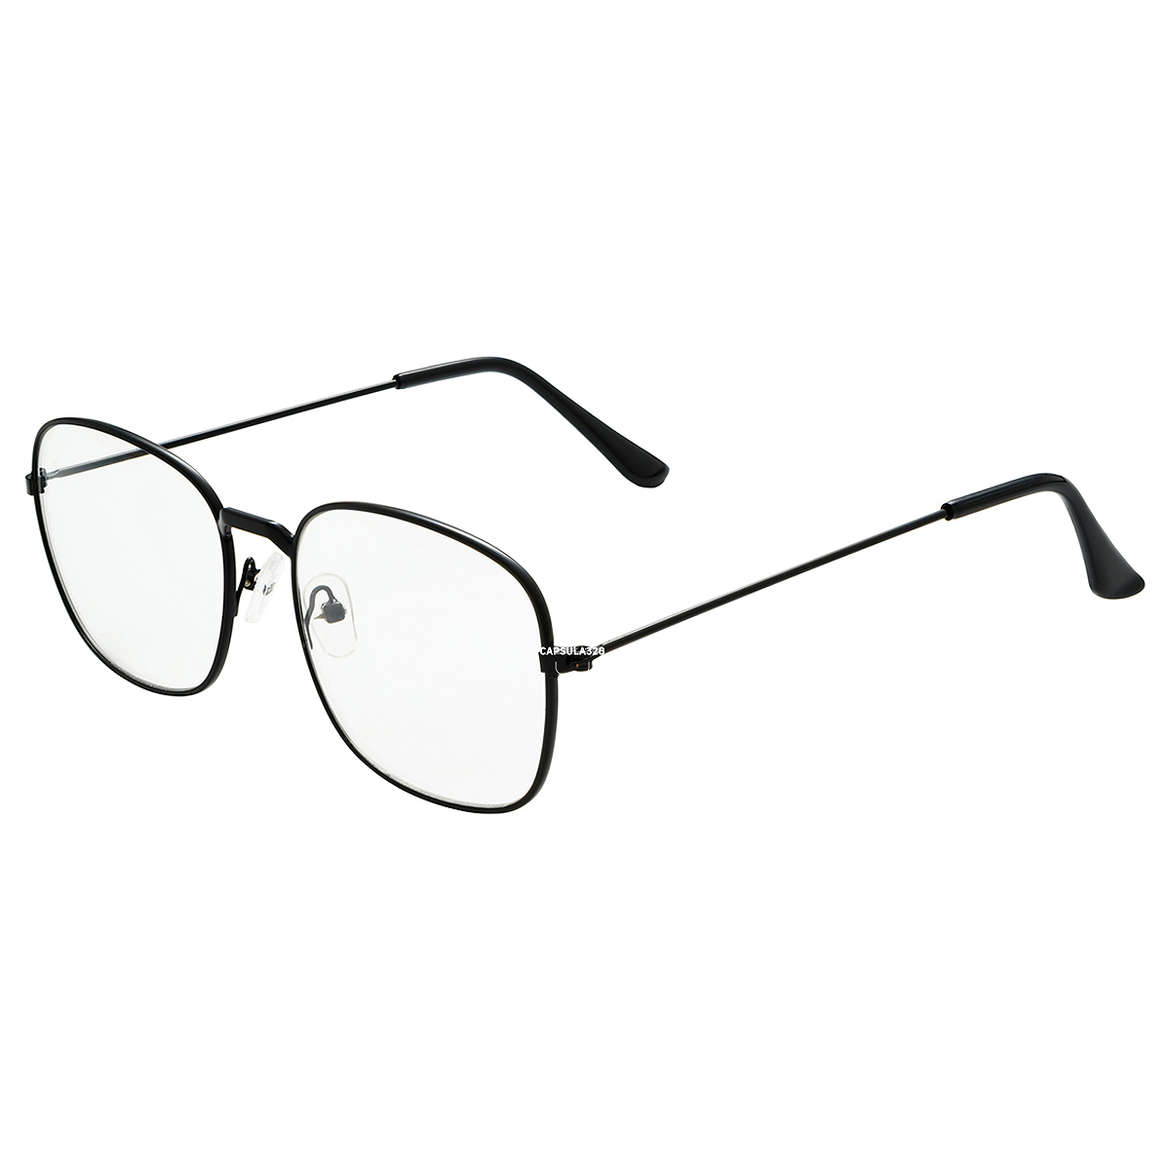 Іміджеві окуляри Square 1404